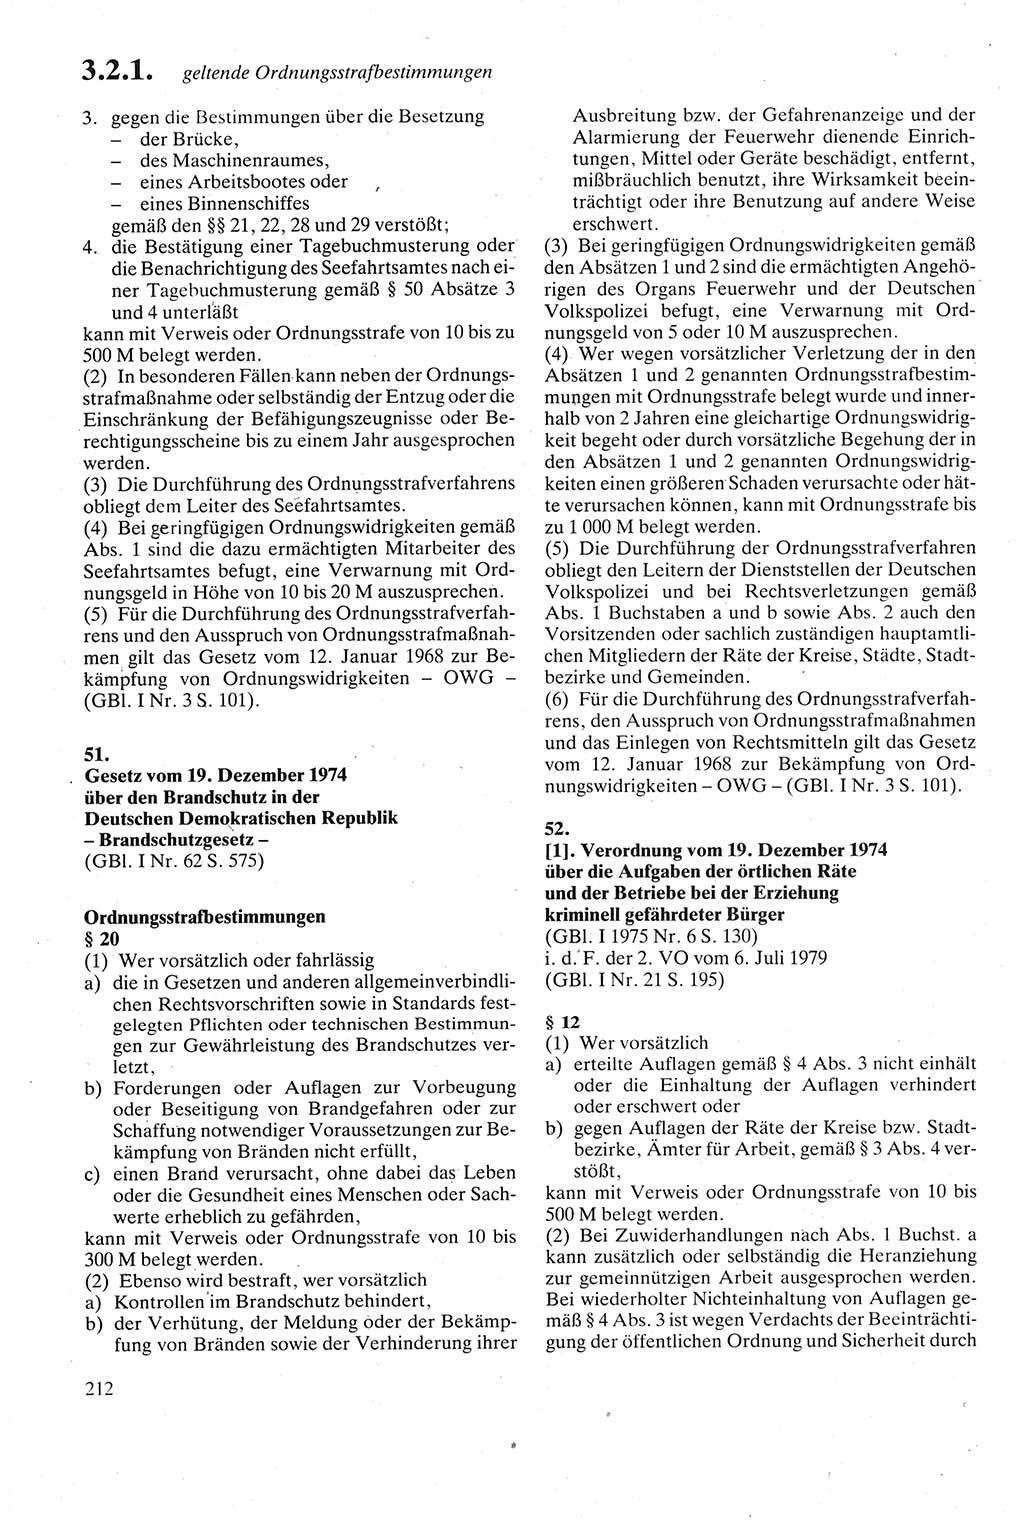 Strafgesetzbuch (StGB) der Deutschen Demokratischen Republik (DDR) sowie angrenzende Gesetze und Bestimmungen 1979, Seite 212 (StGB DDR Ges. Best. 1979, S. 212)